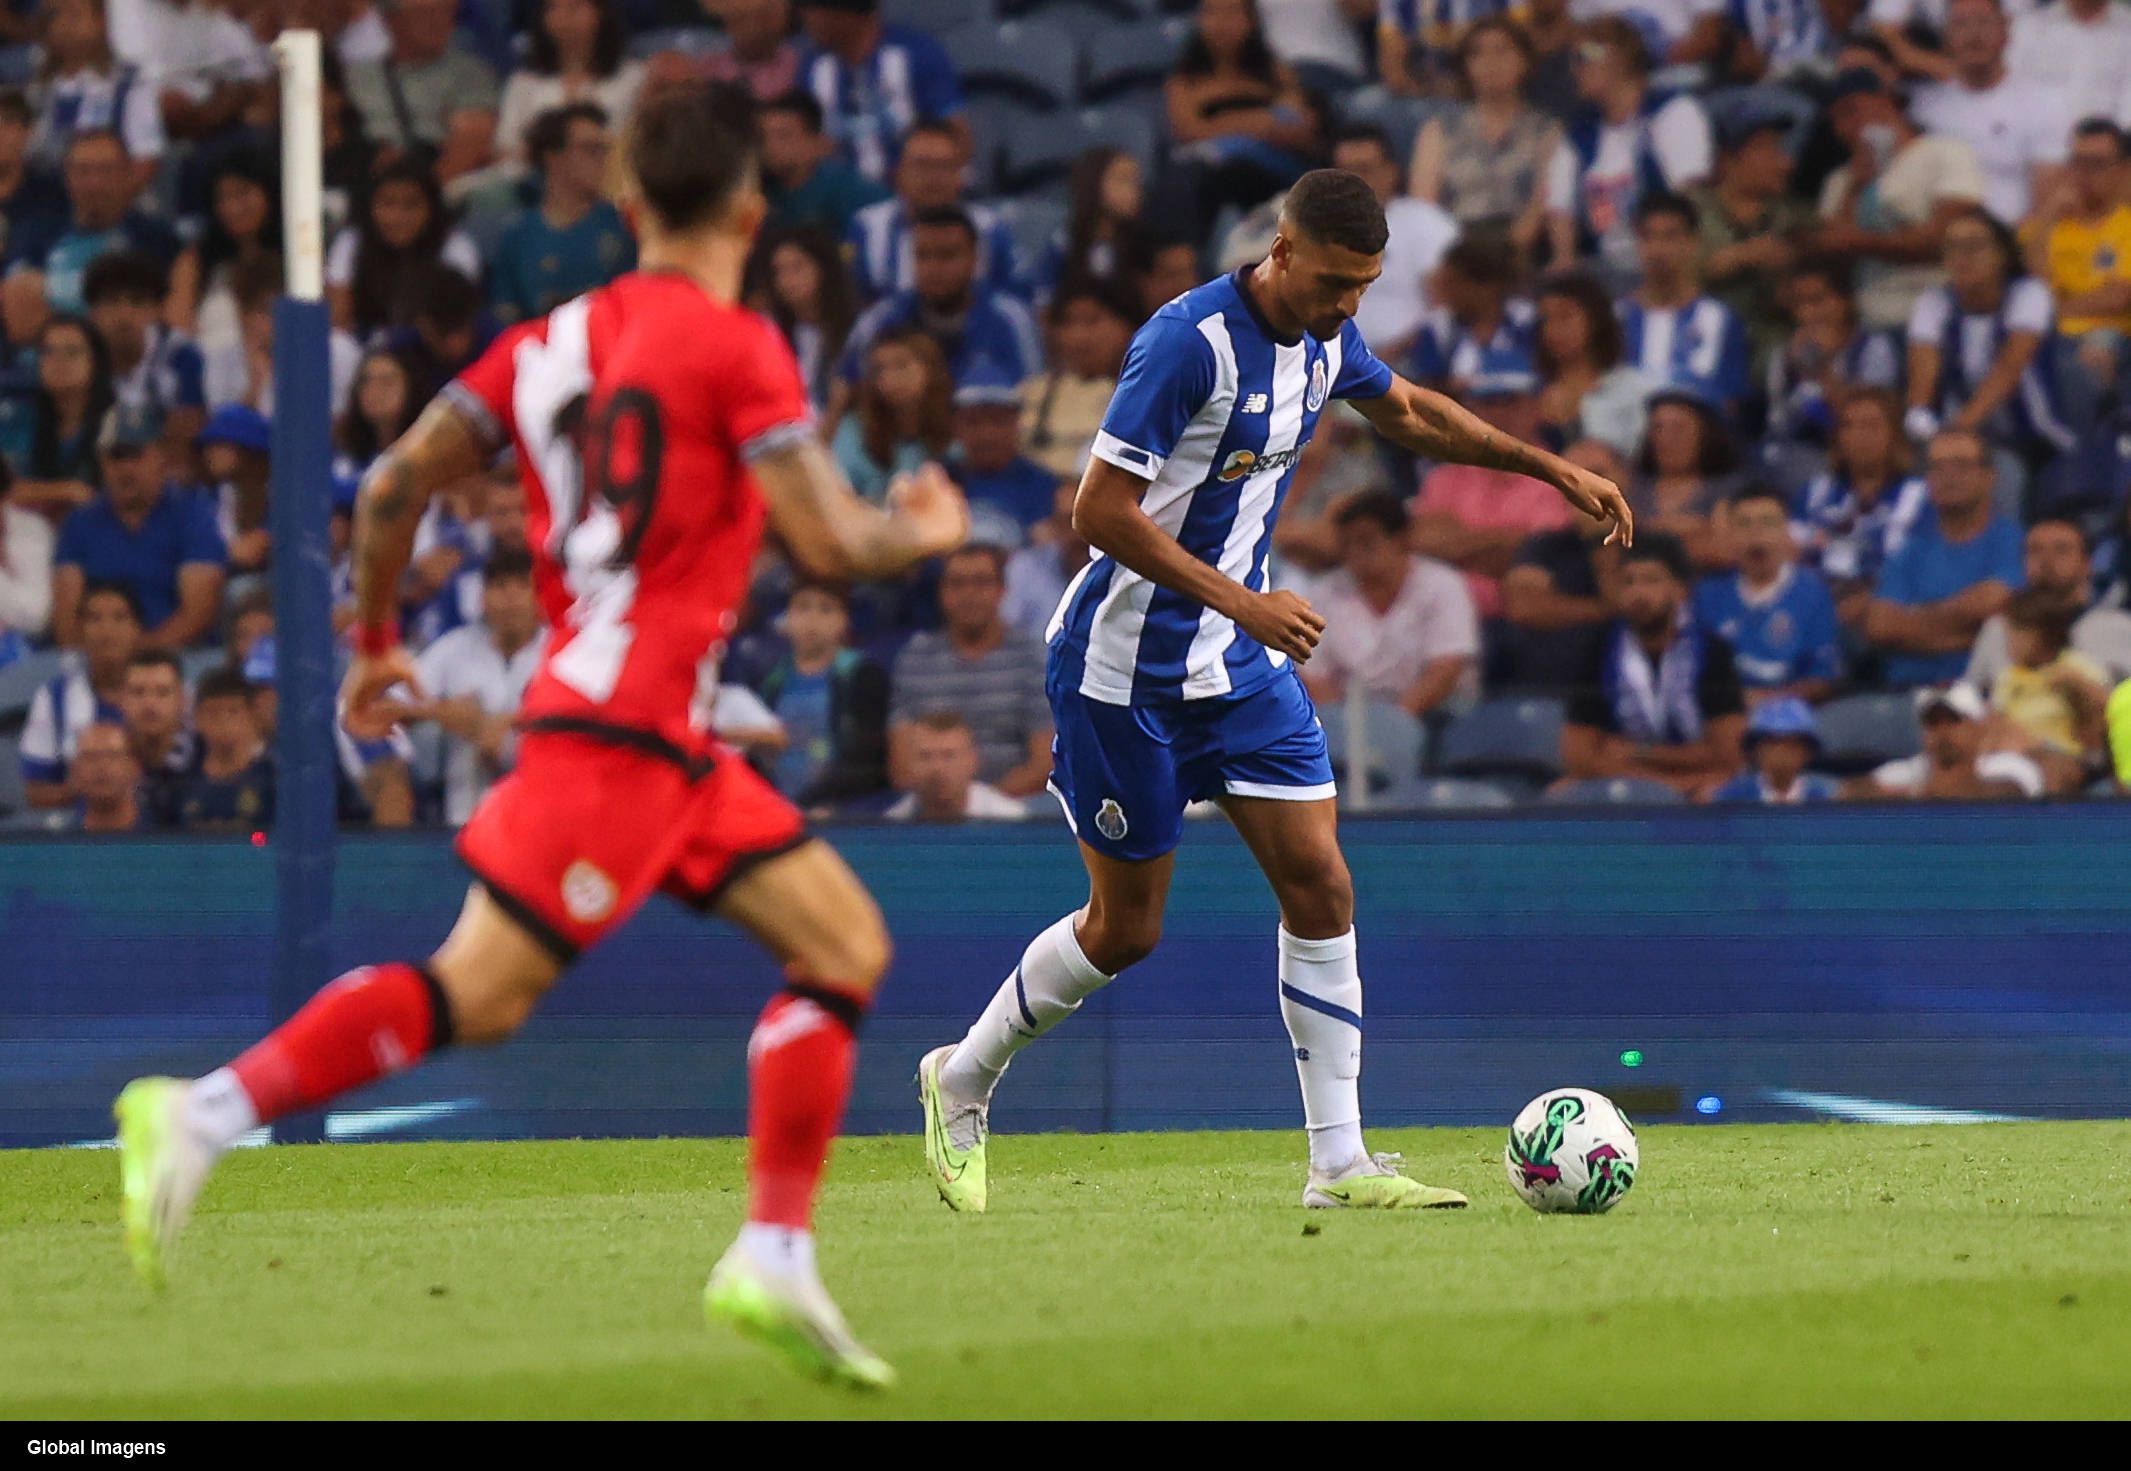 Os destaques do FC Porto: Galeno tinha as chaves do cofre que Pepe guardou